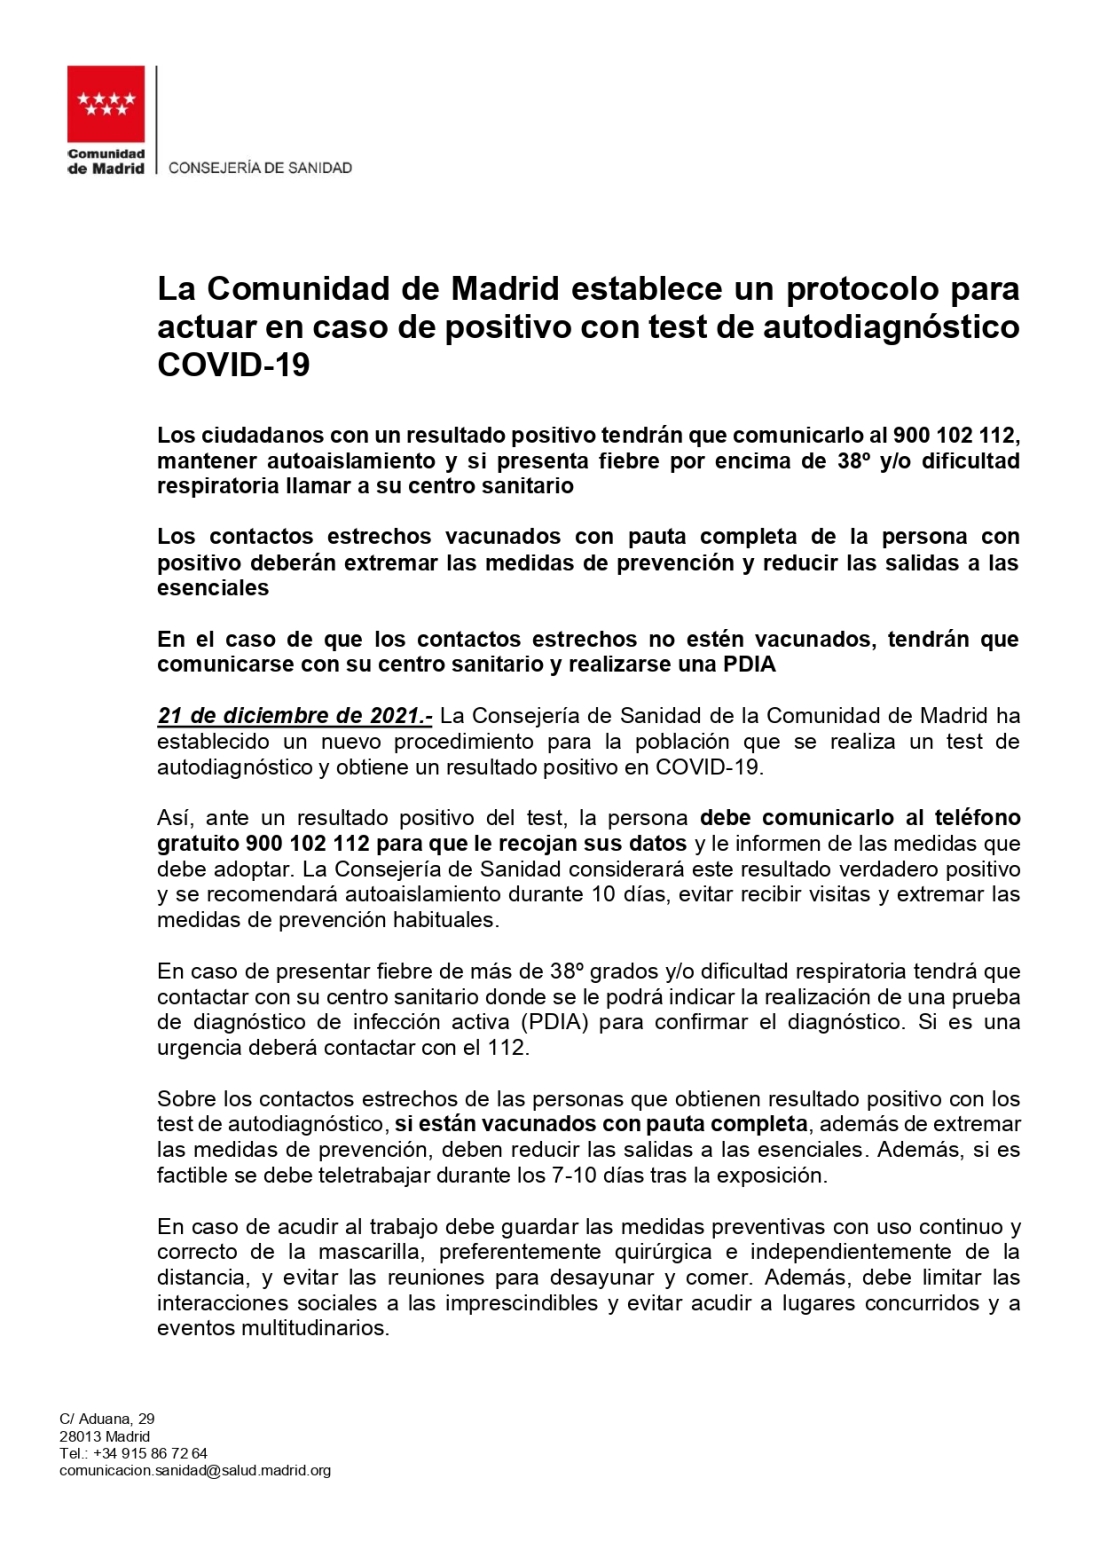 LA COMUNIDAD DE MADRID ESTABLECE UN PROTOCOLO PARA ACTUAR EN CASO DE POSITIVO CON TEST DE AUTODIAGNÓSTICO COVID19